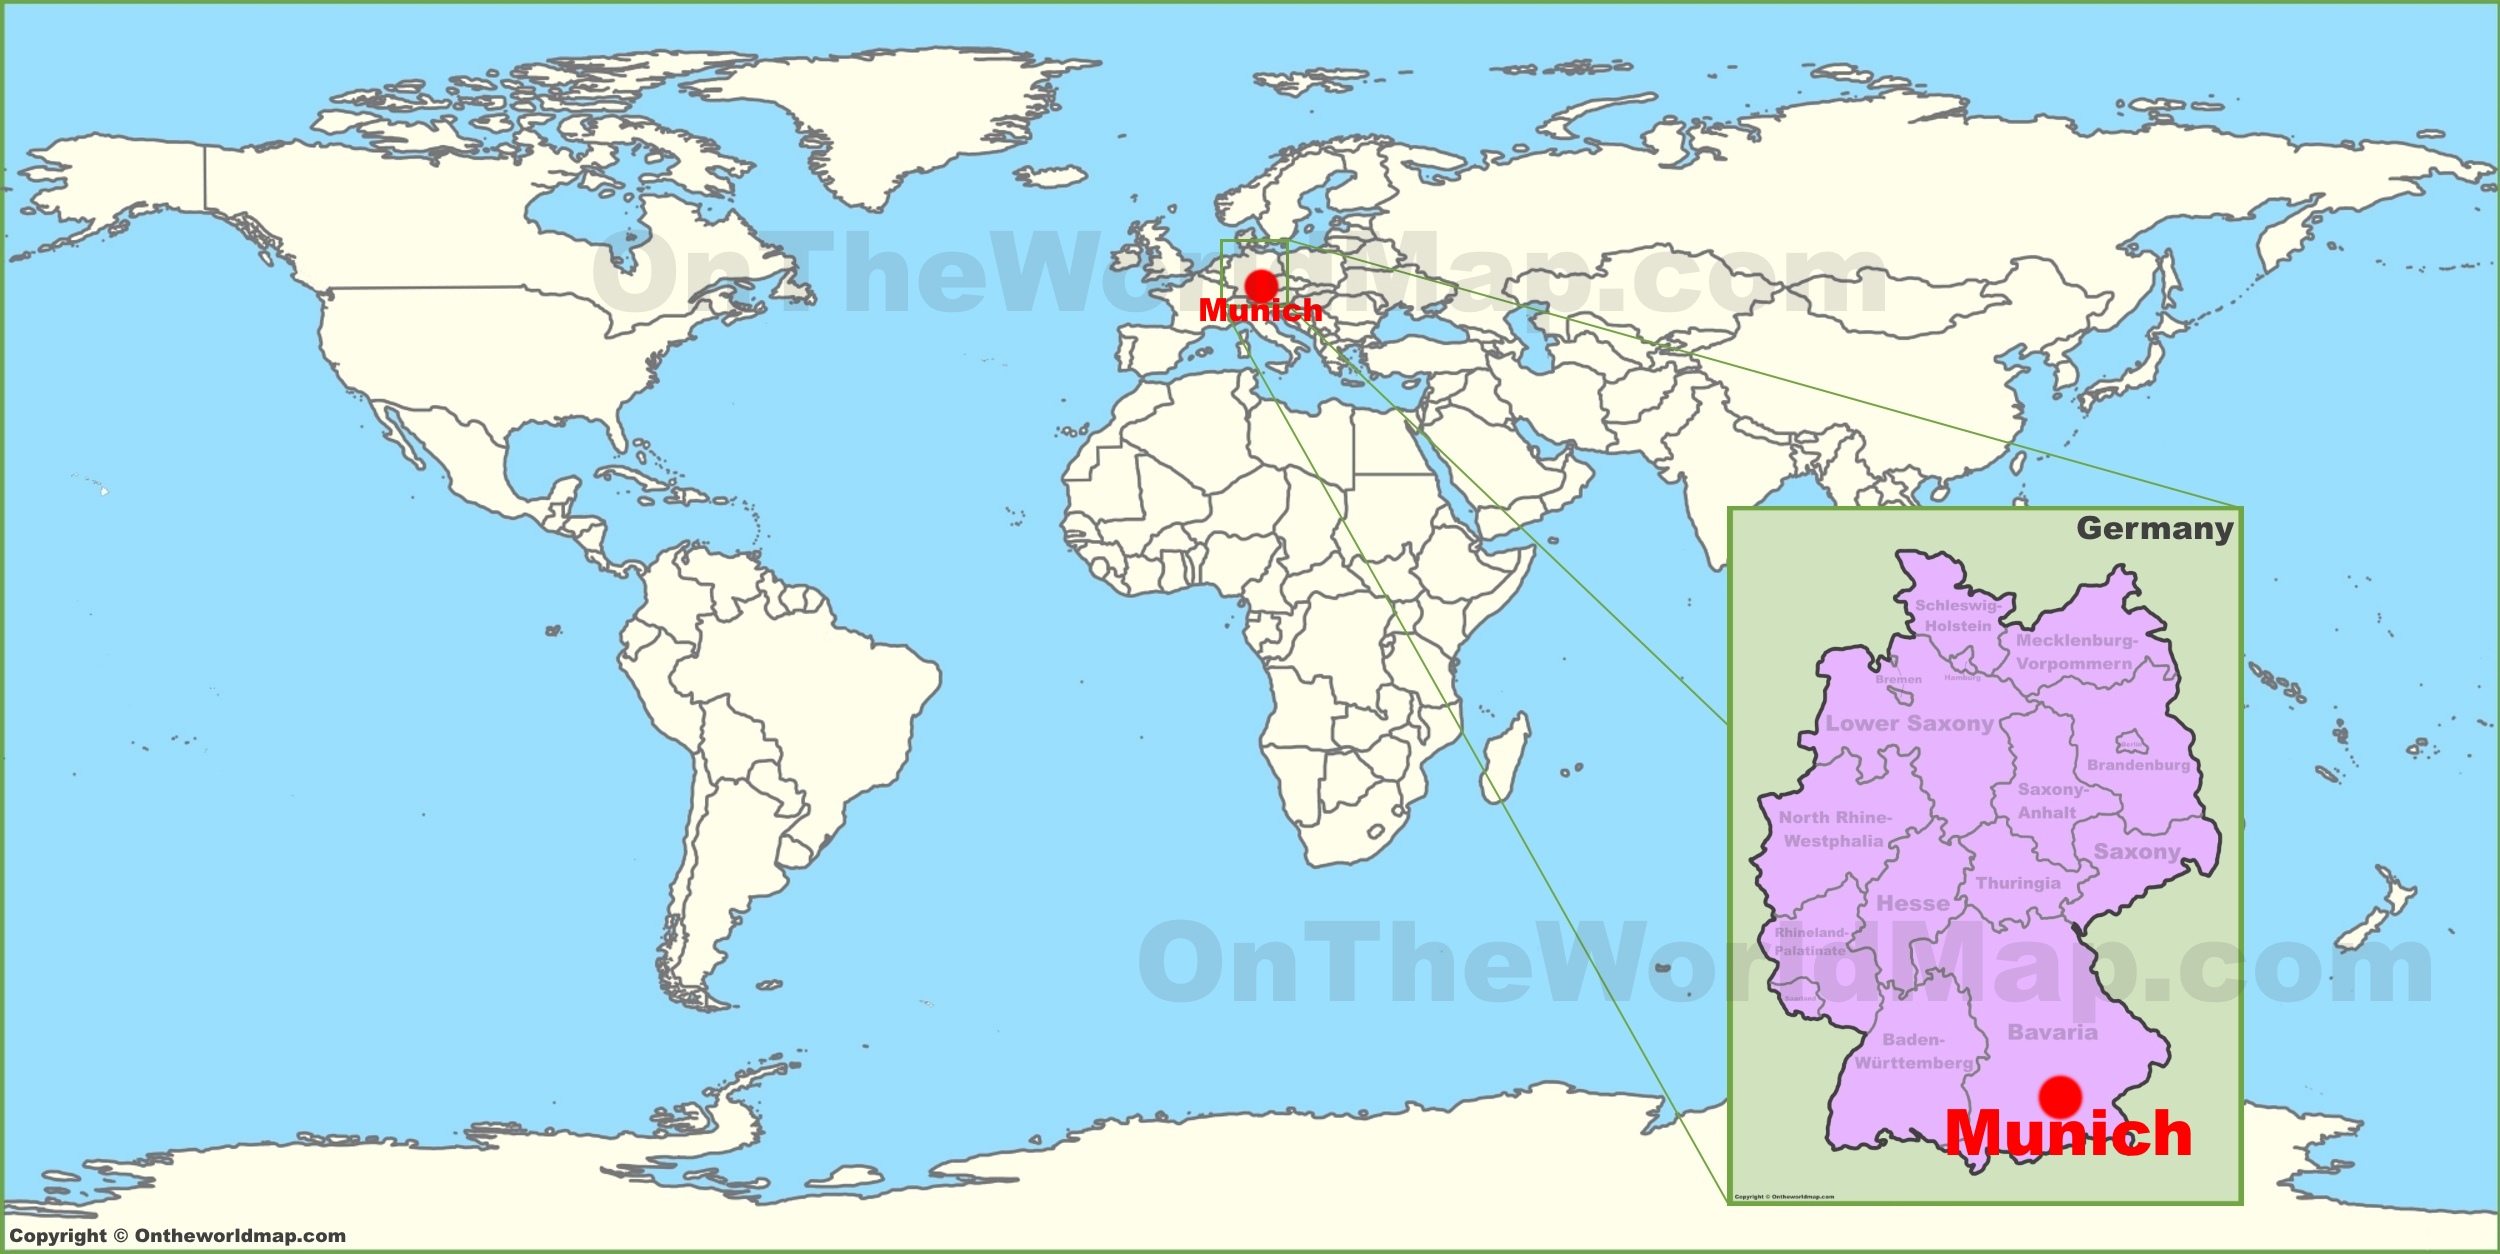 Munich On The World Map